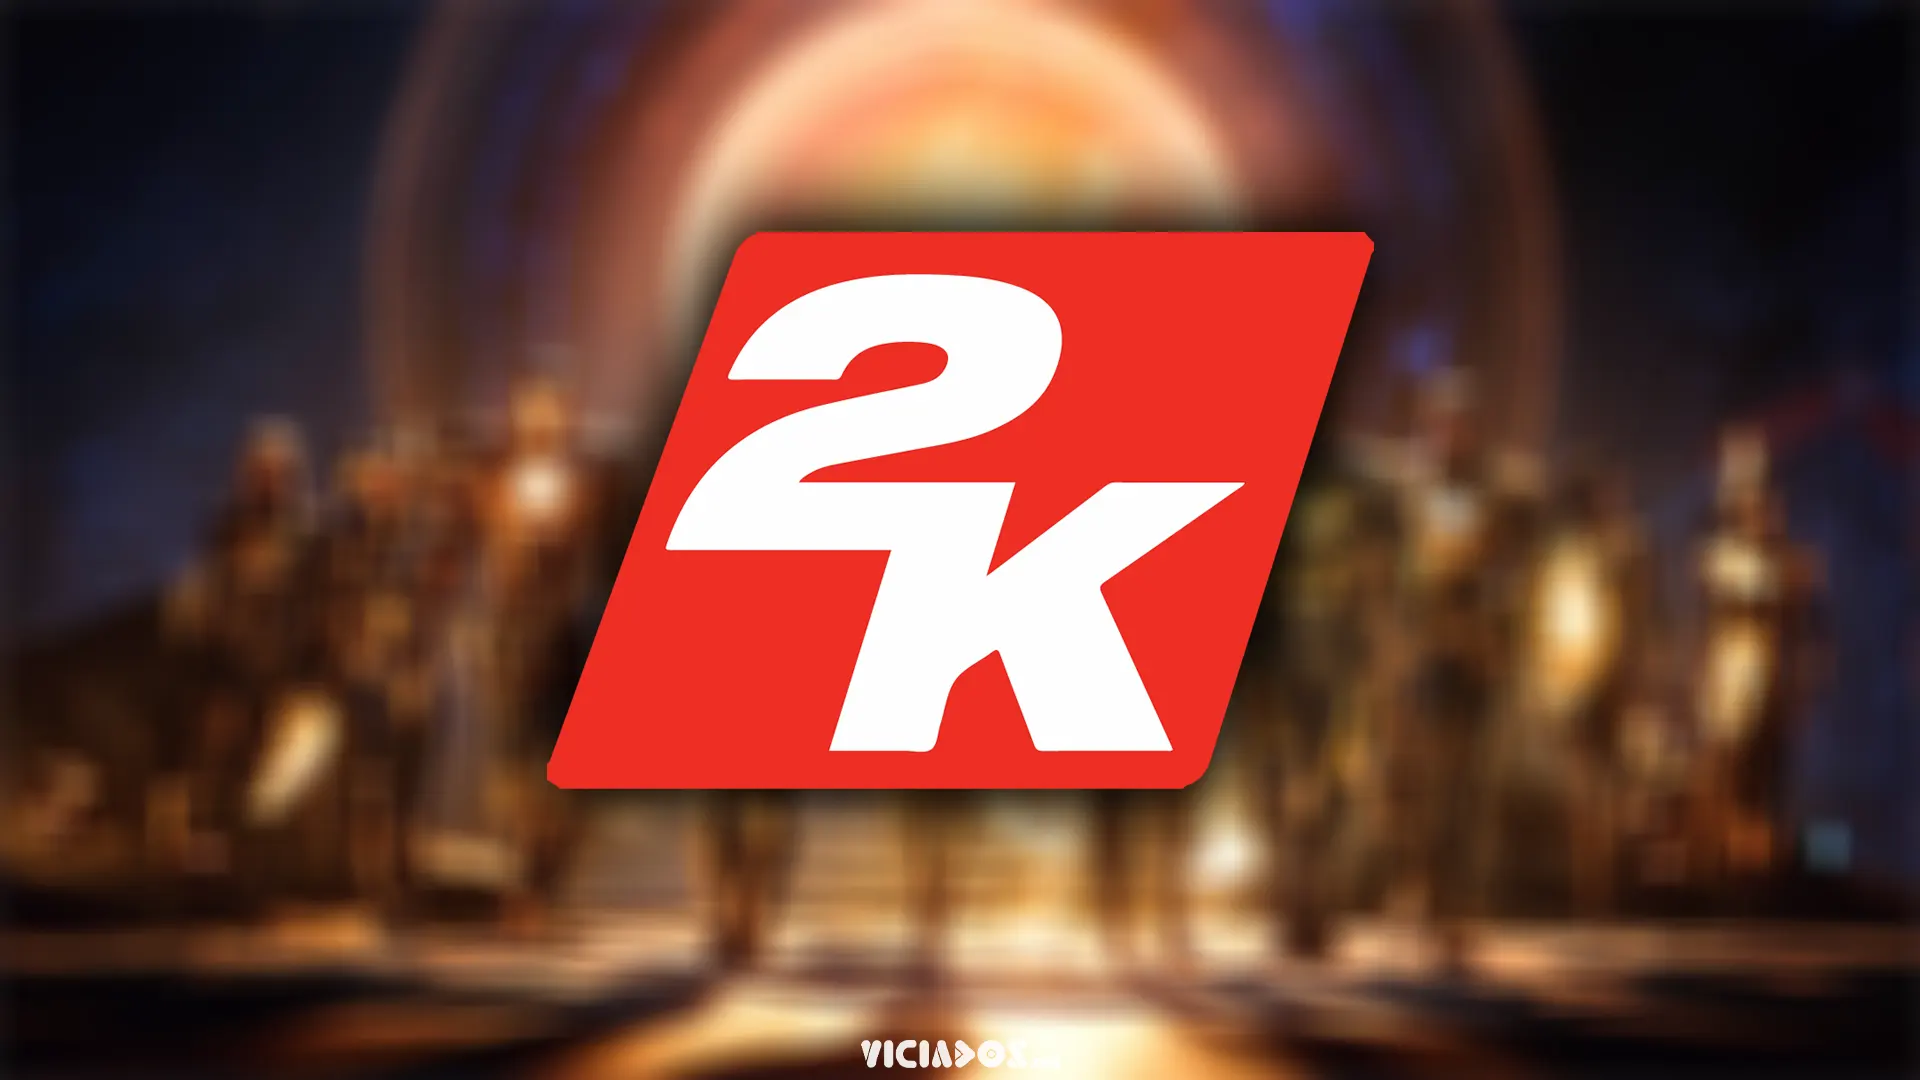 2K Games | Tom Henderson comenta sobre novo jogo da produtora; Vaza data de lançamento 2024 Portal Viciados